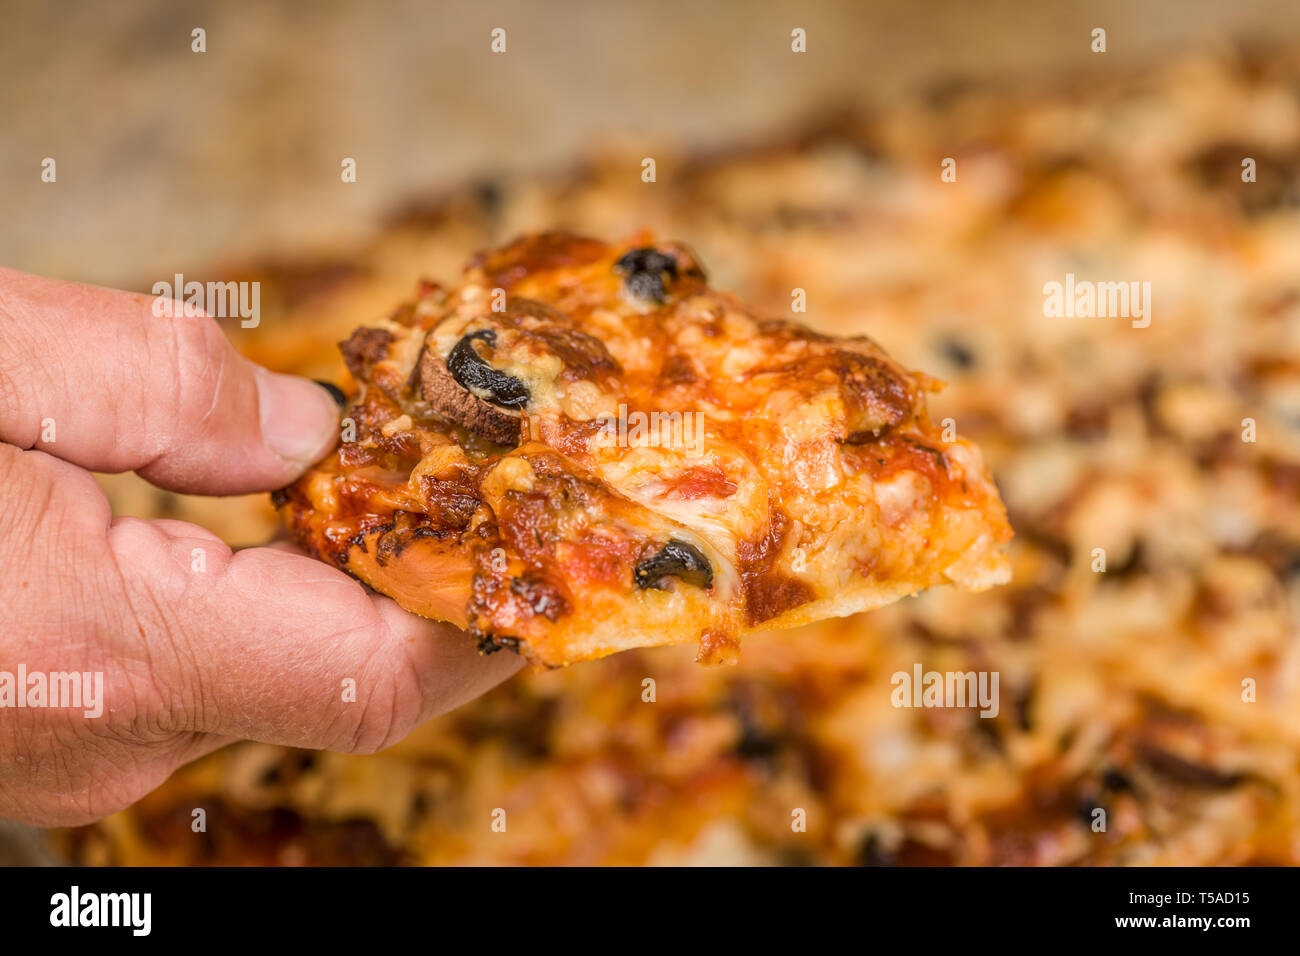 El Hombre recogiendo un trozo de carne y veggie pizza casera con ingredientes de salchichas, salchichones, tocino canadiense, aceitunas negras, champiñones, mozzarella chee Foto de stock